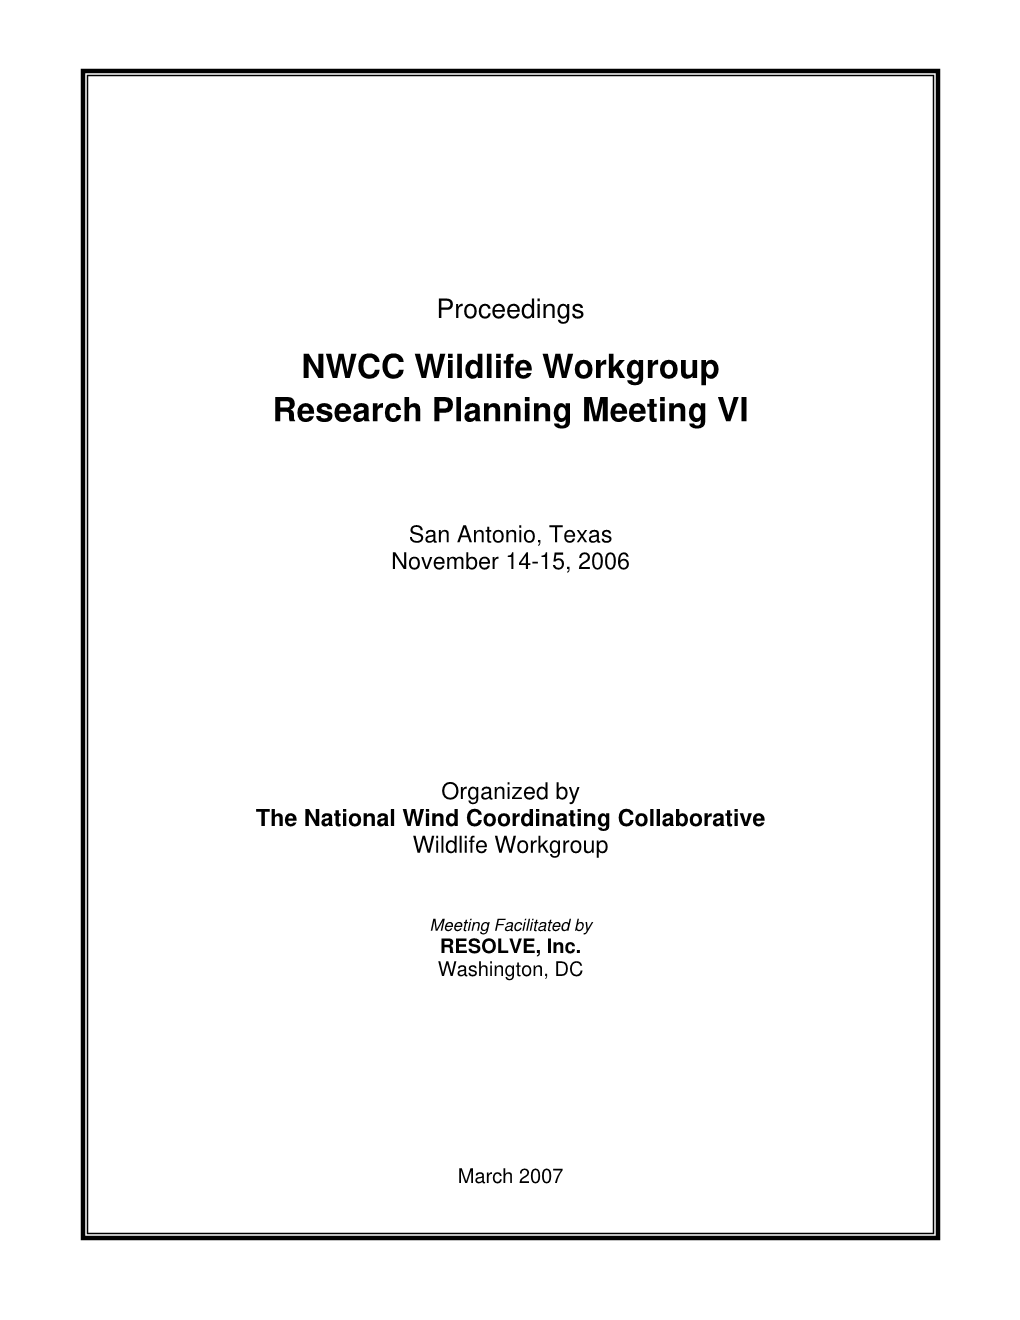 Proceedings of Wildlife Research Meeting VI